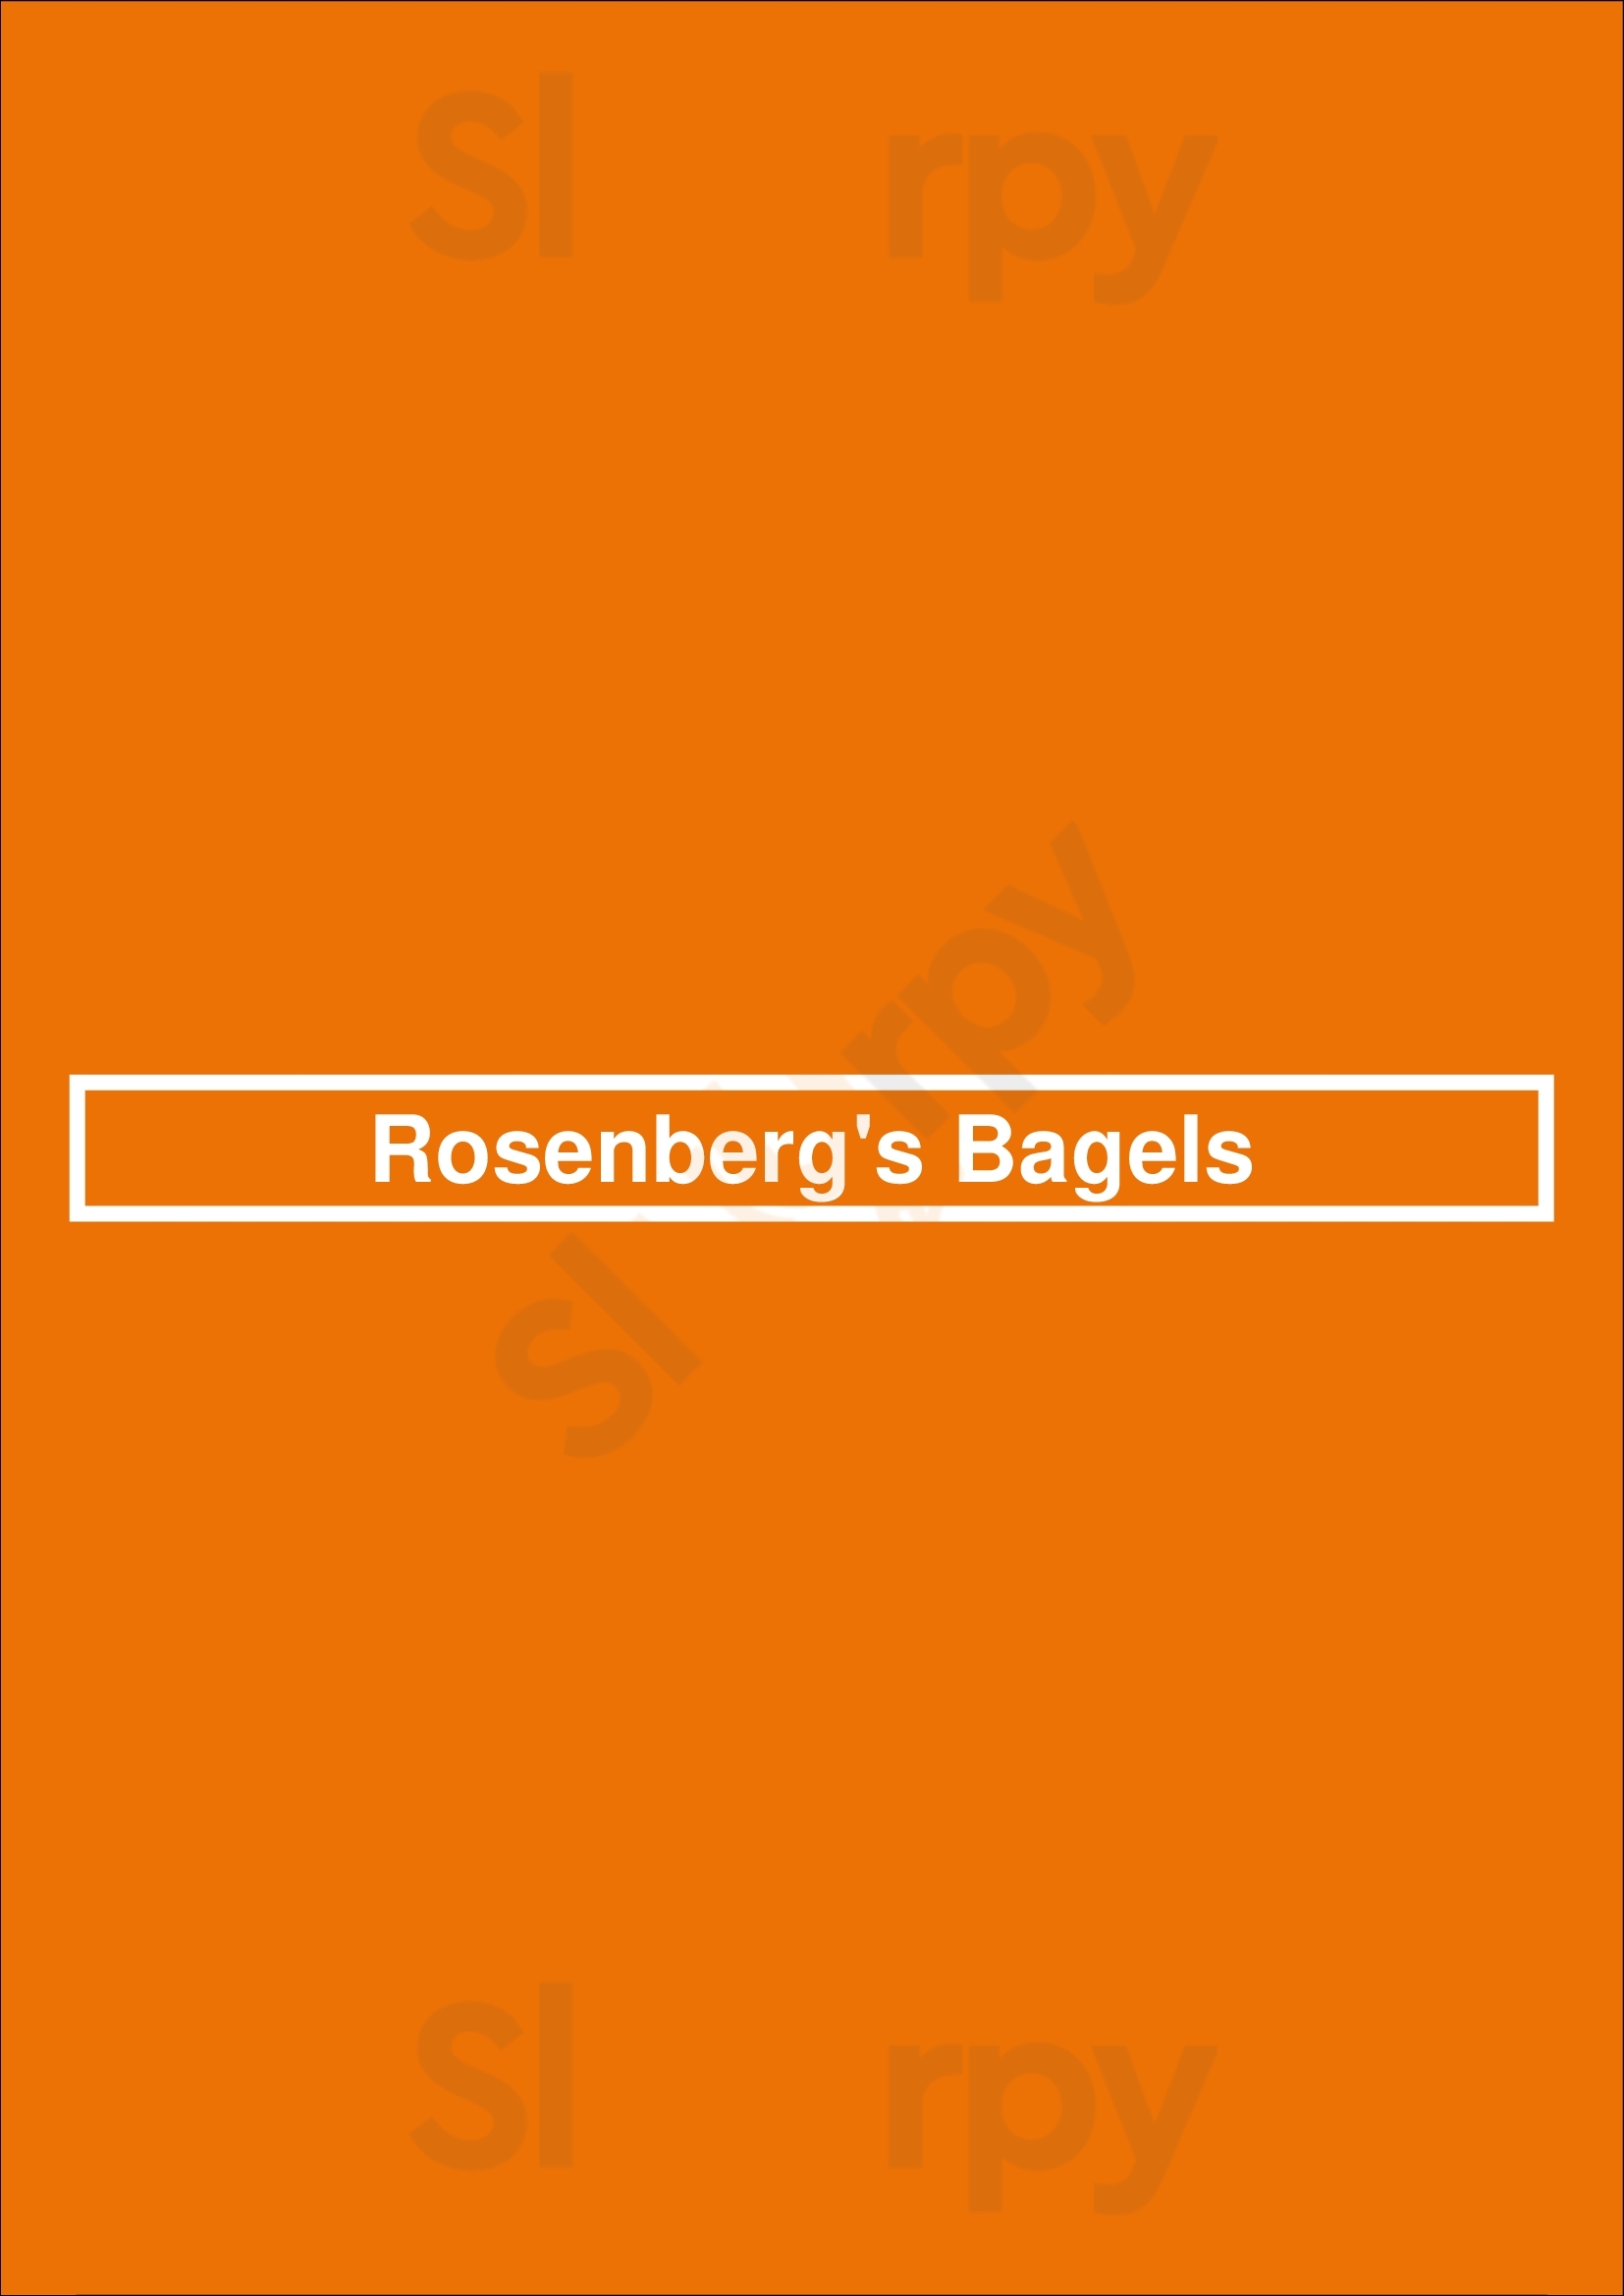 Rosenberg's Bagels Denver Menu - 1